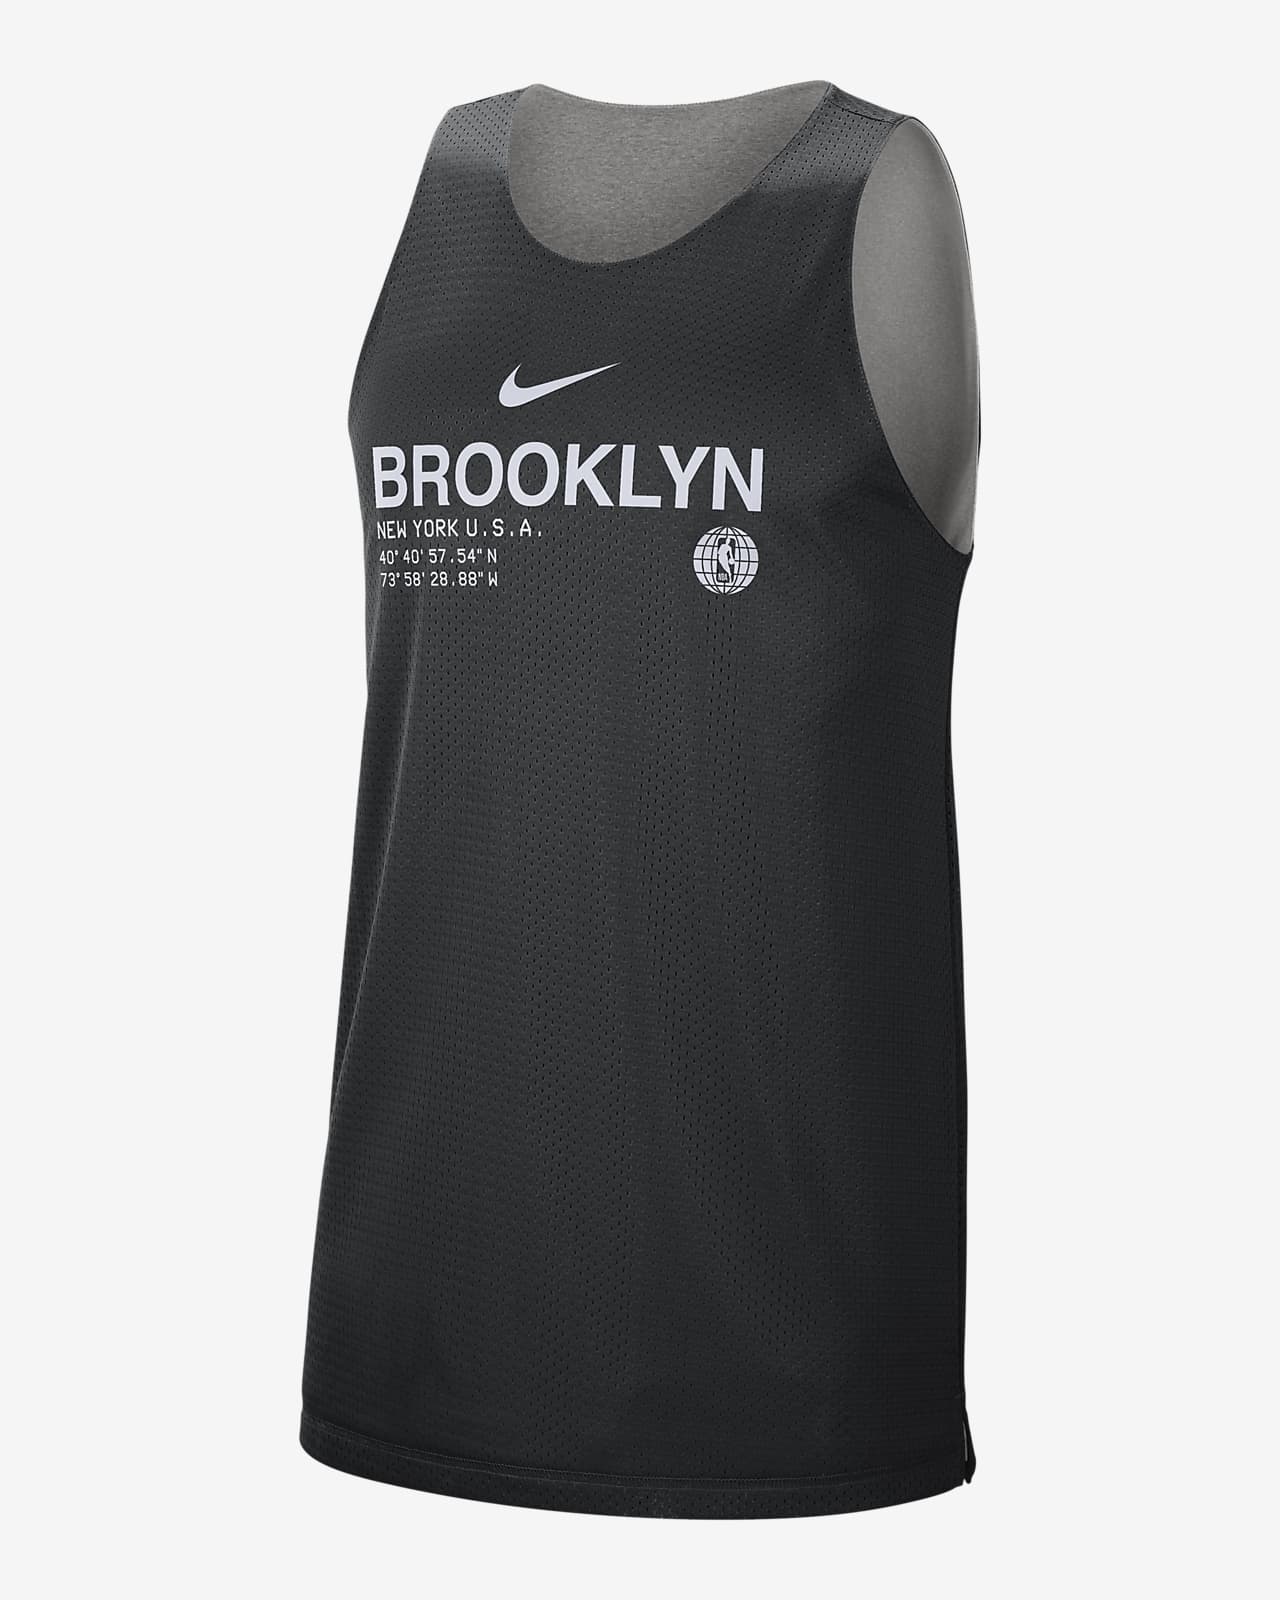 Brooklyn Nets Standard Issue Men's Nike 